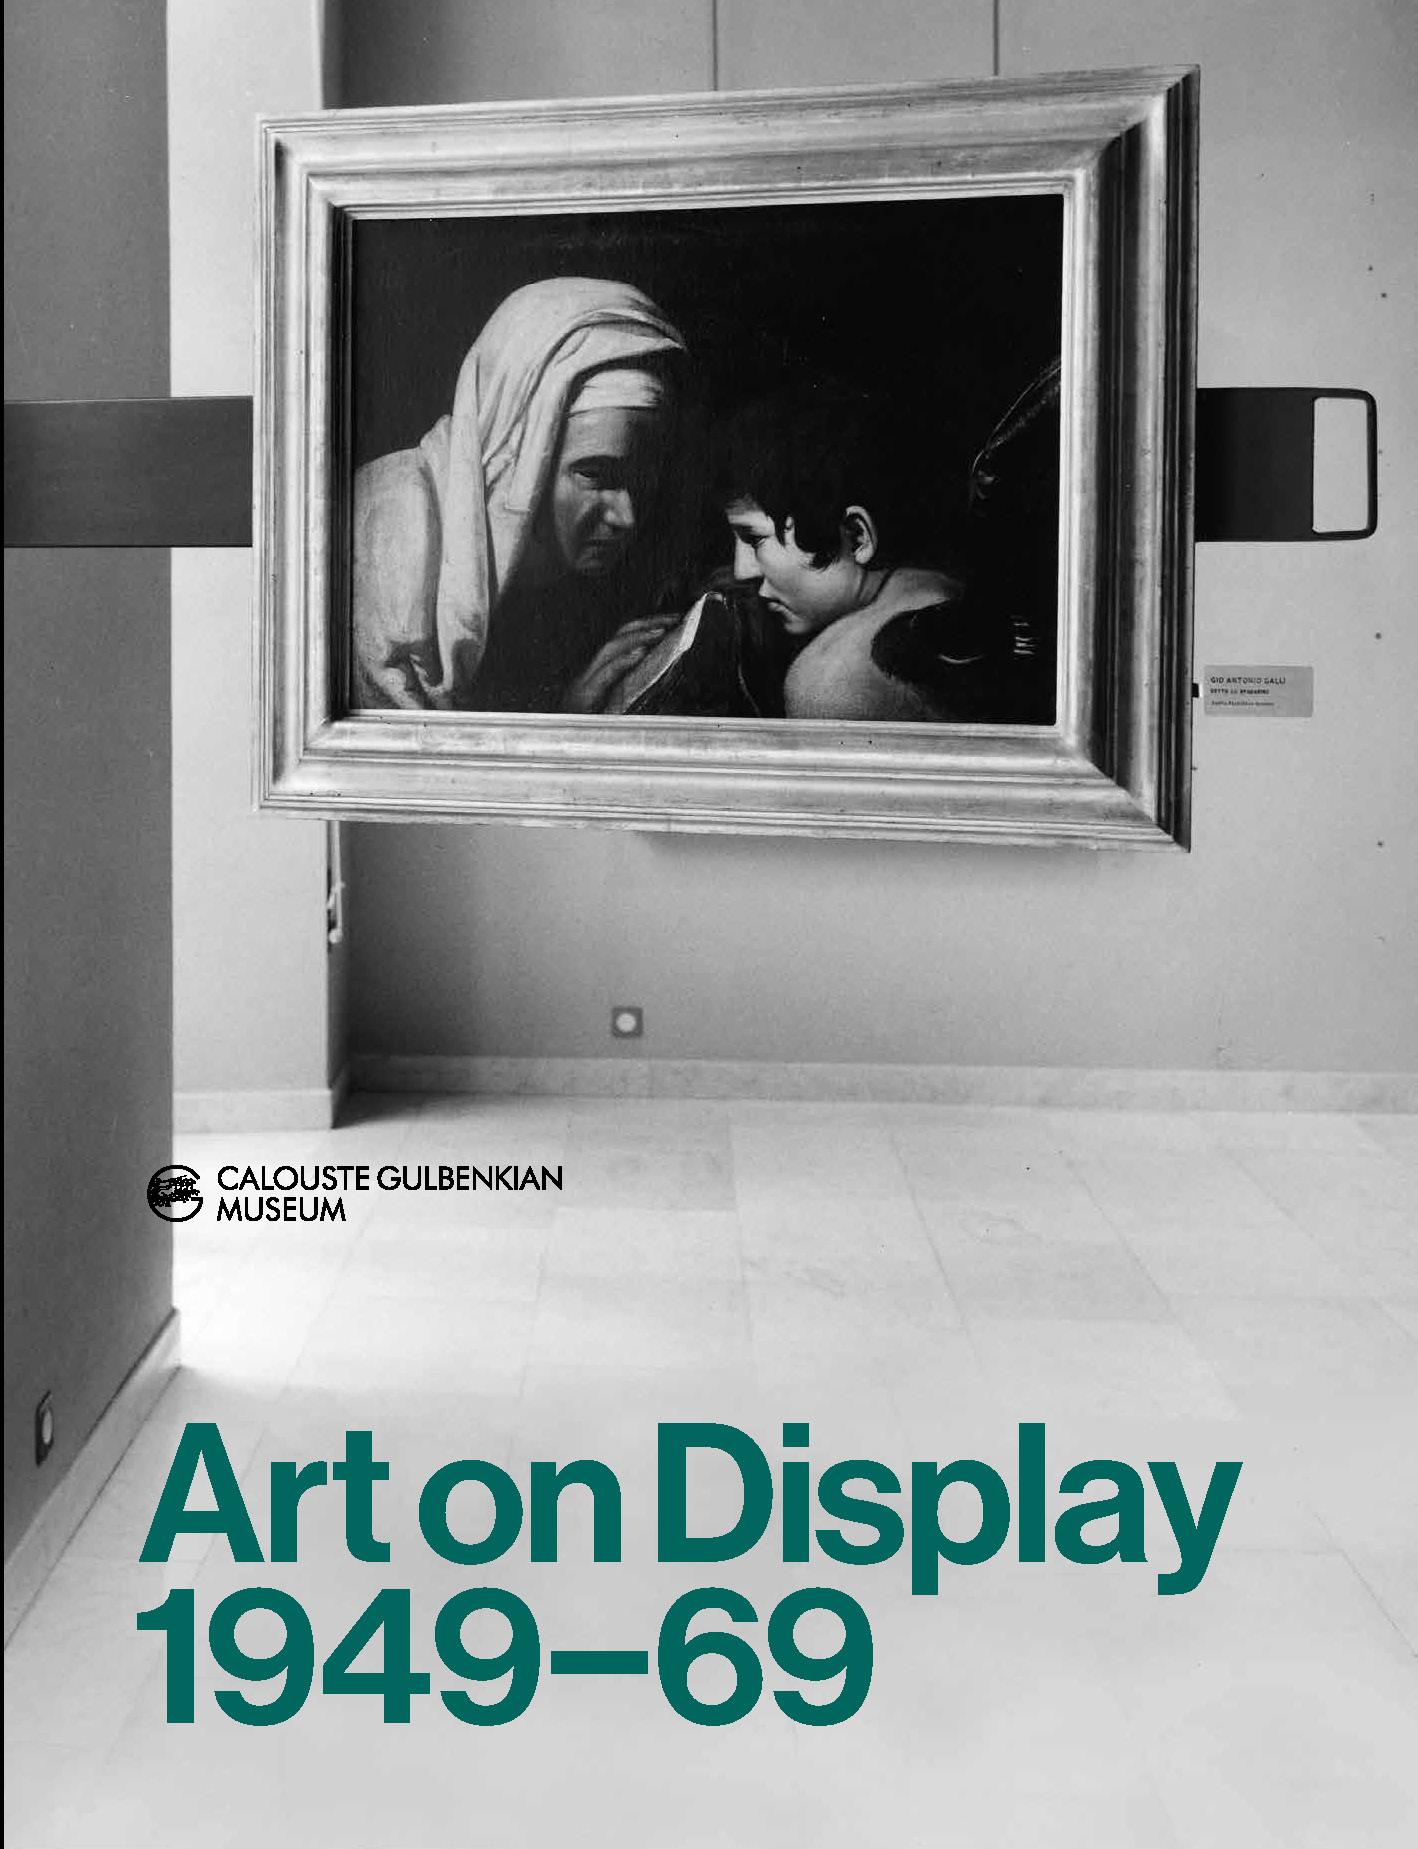 Art on Display. 1949 – 69